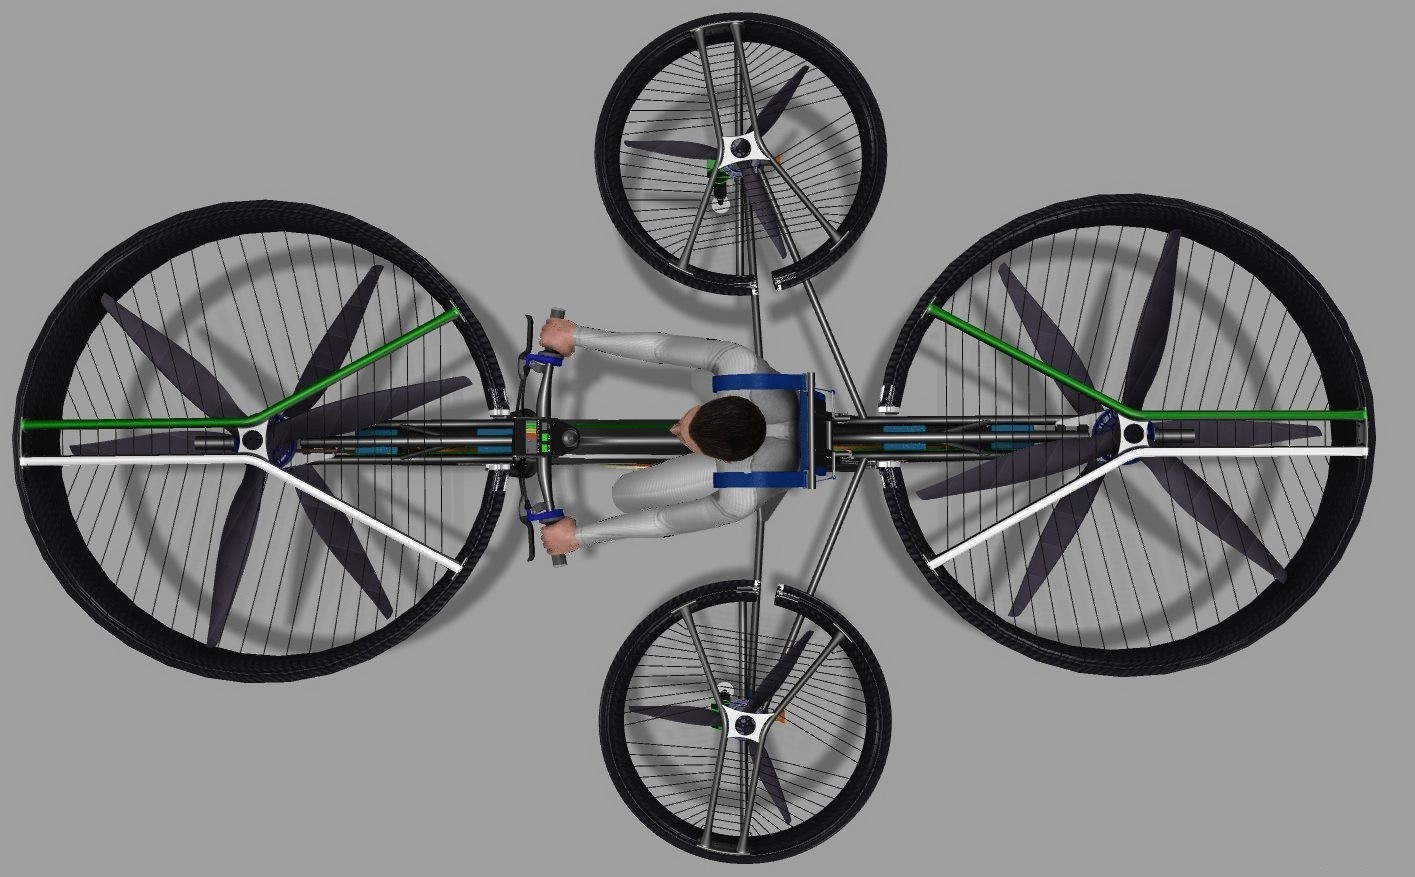 Чешские инженеры создали летающий велосипед